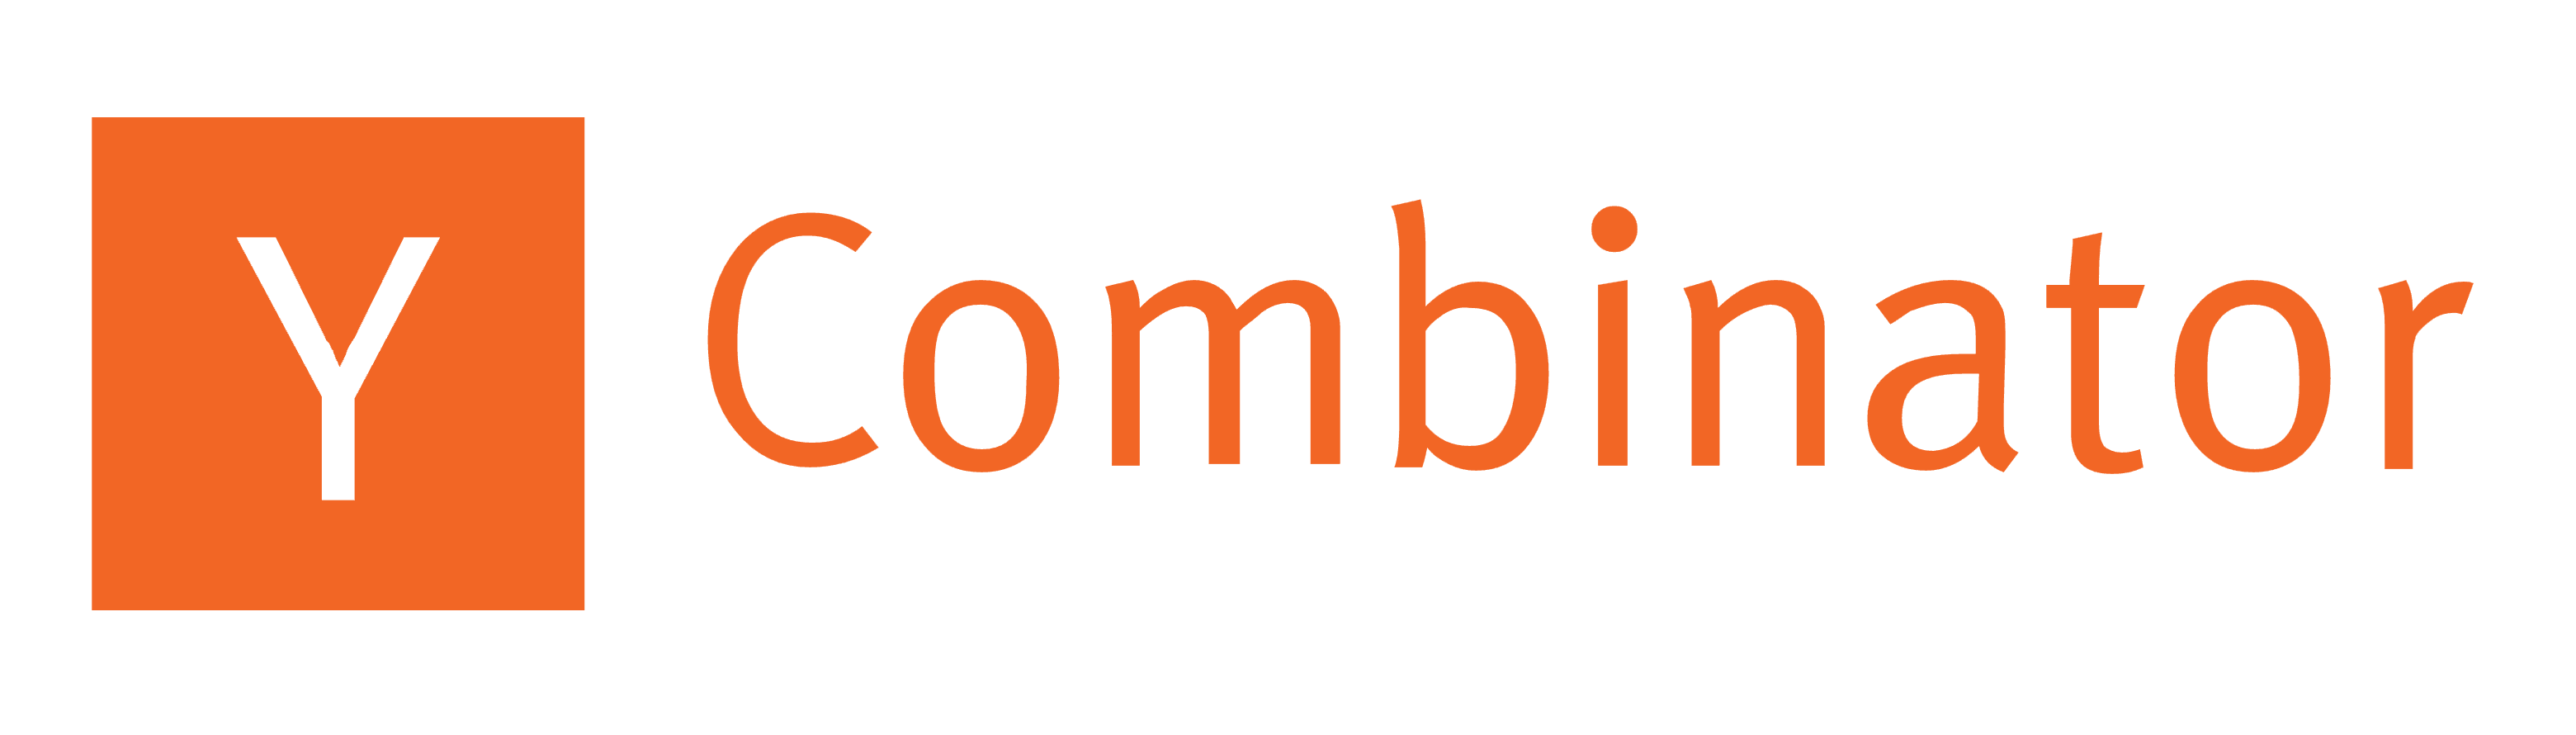 ycombinator logo